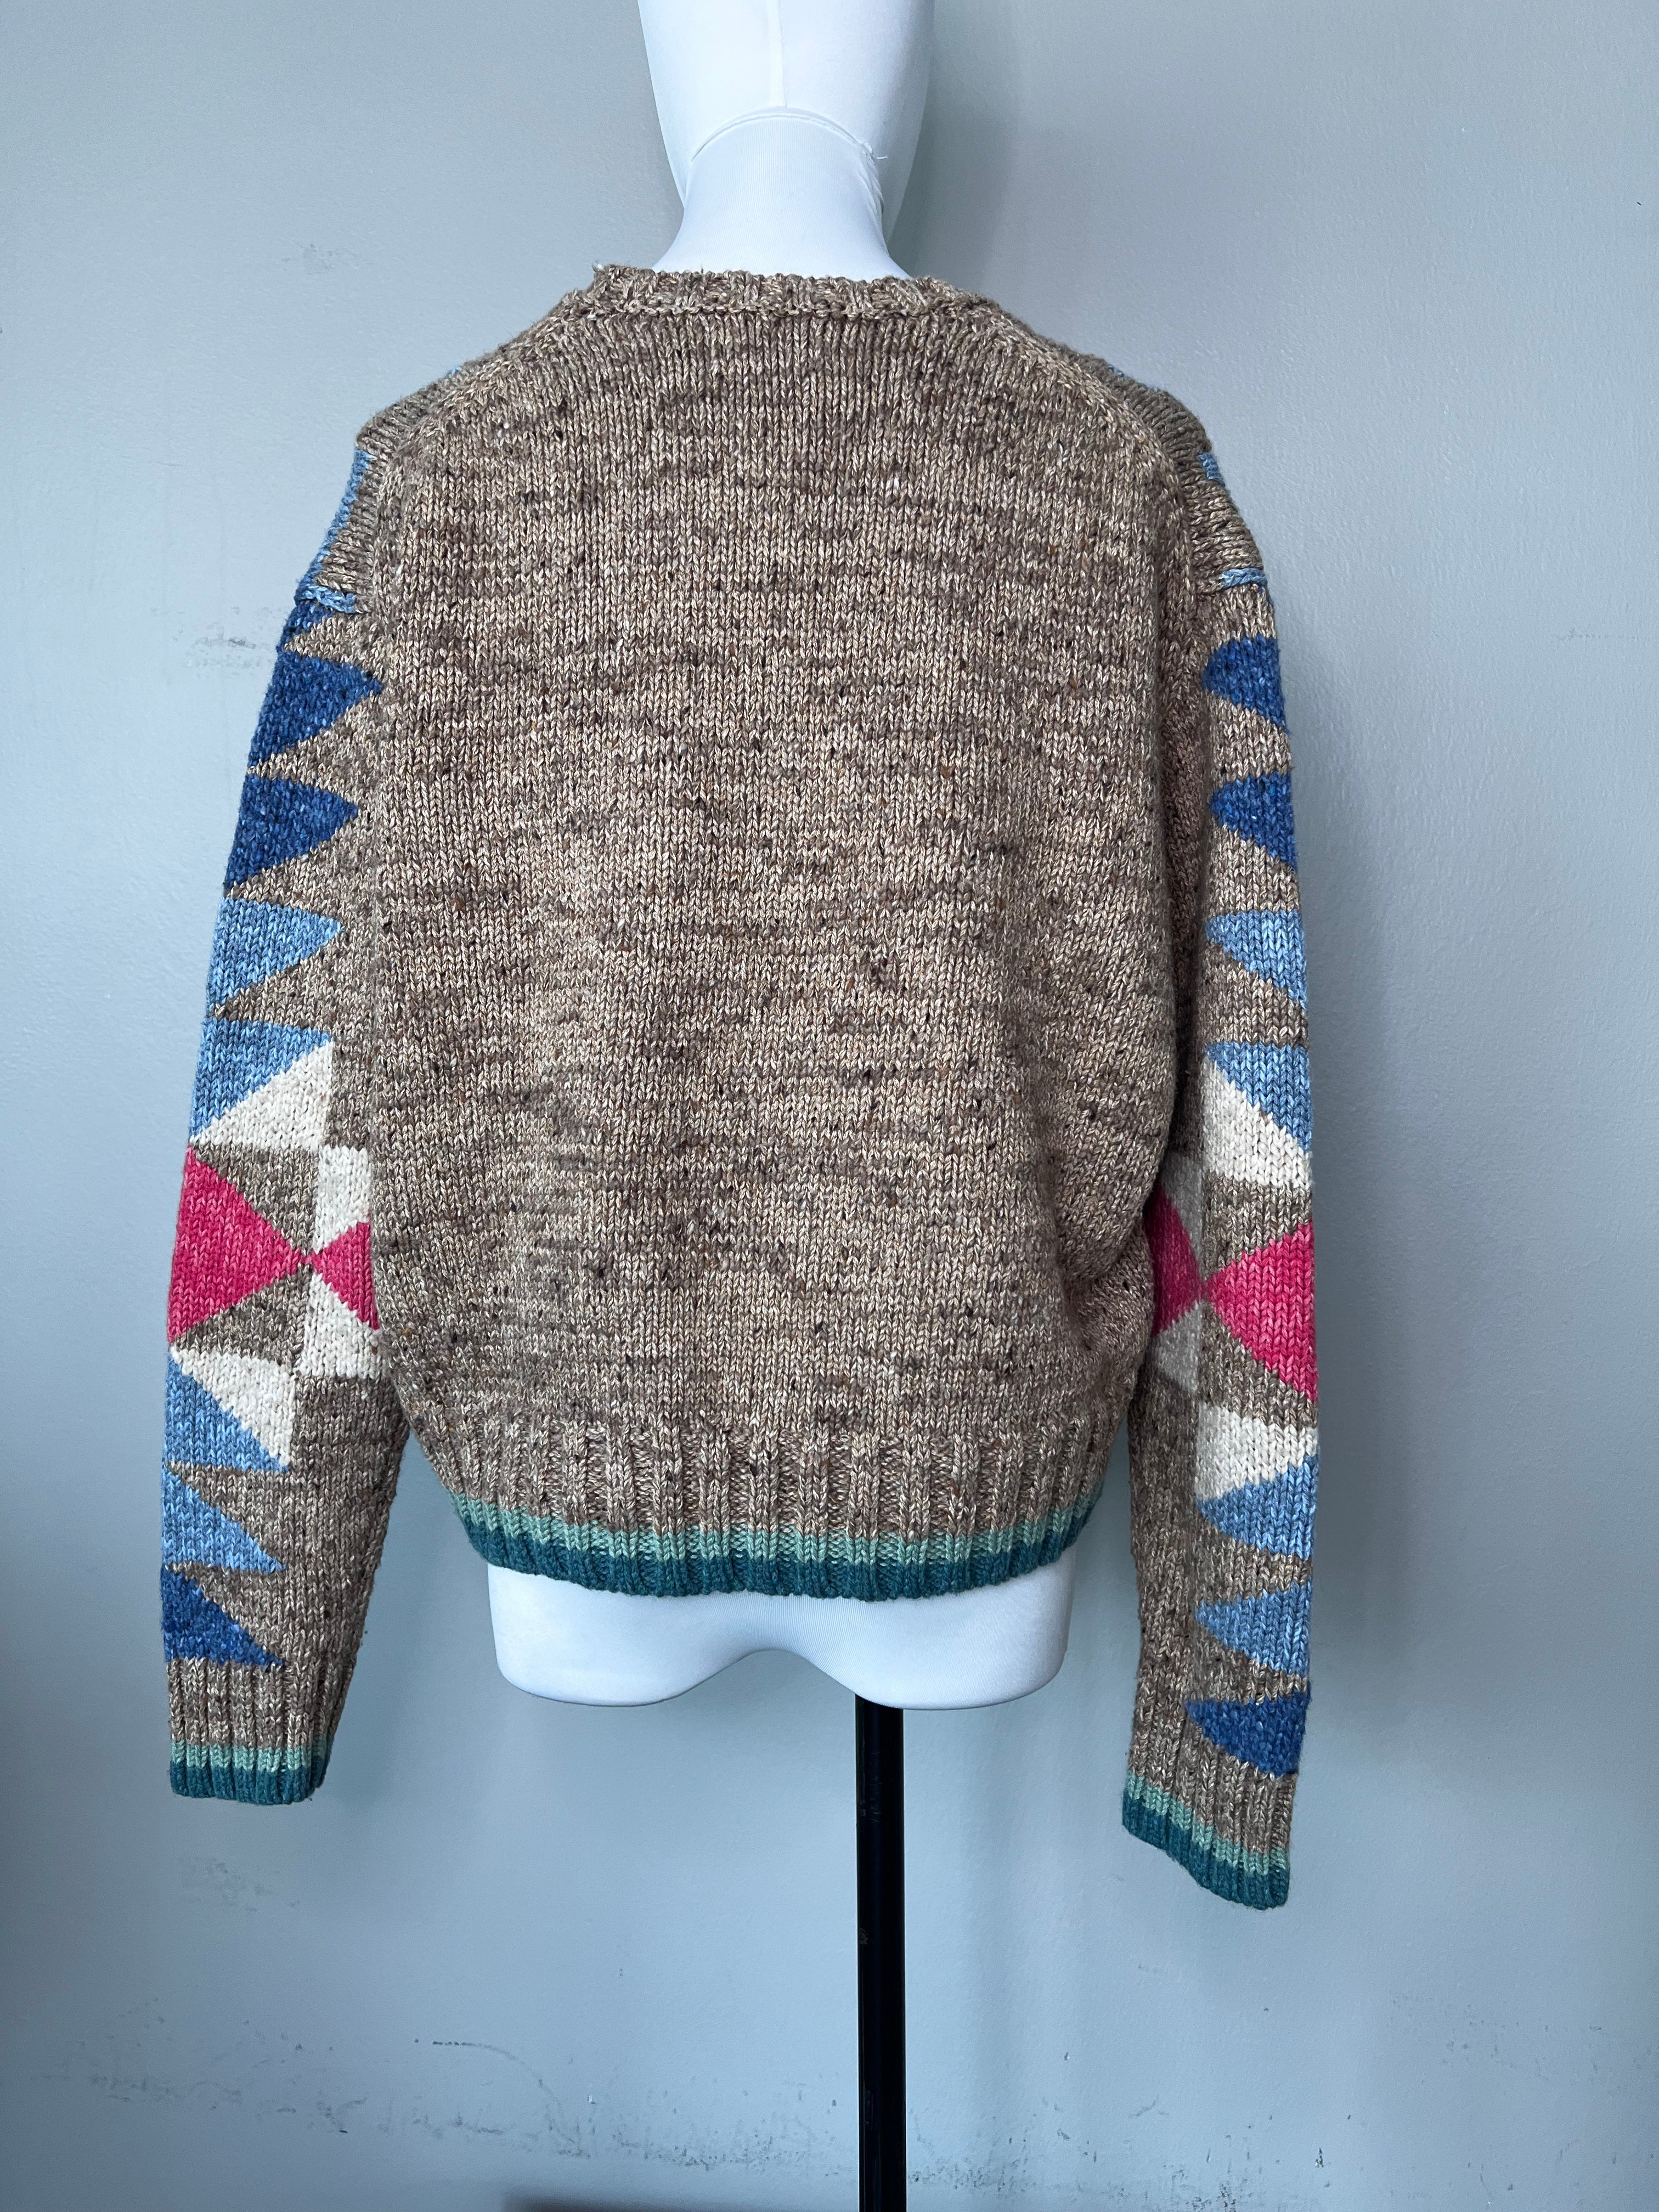 Ralph-Lauren sweater